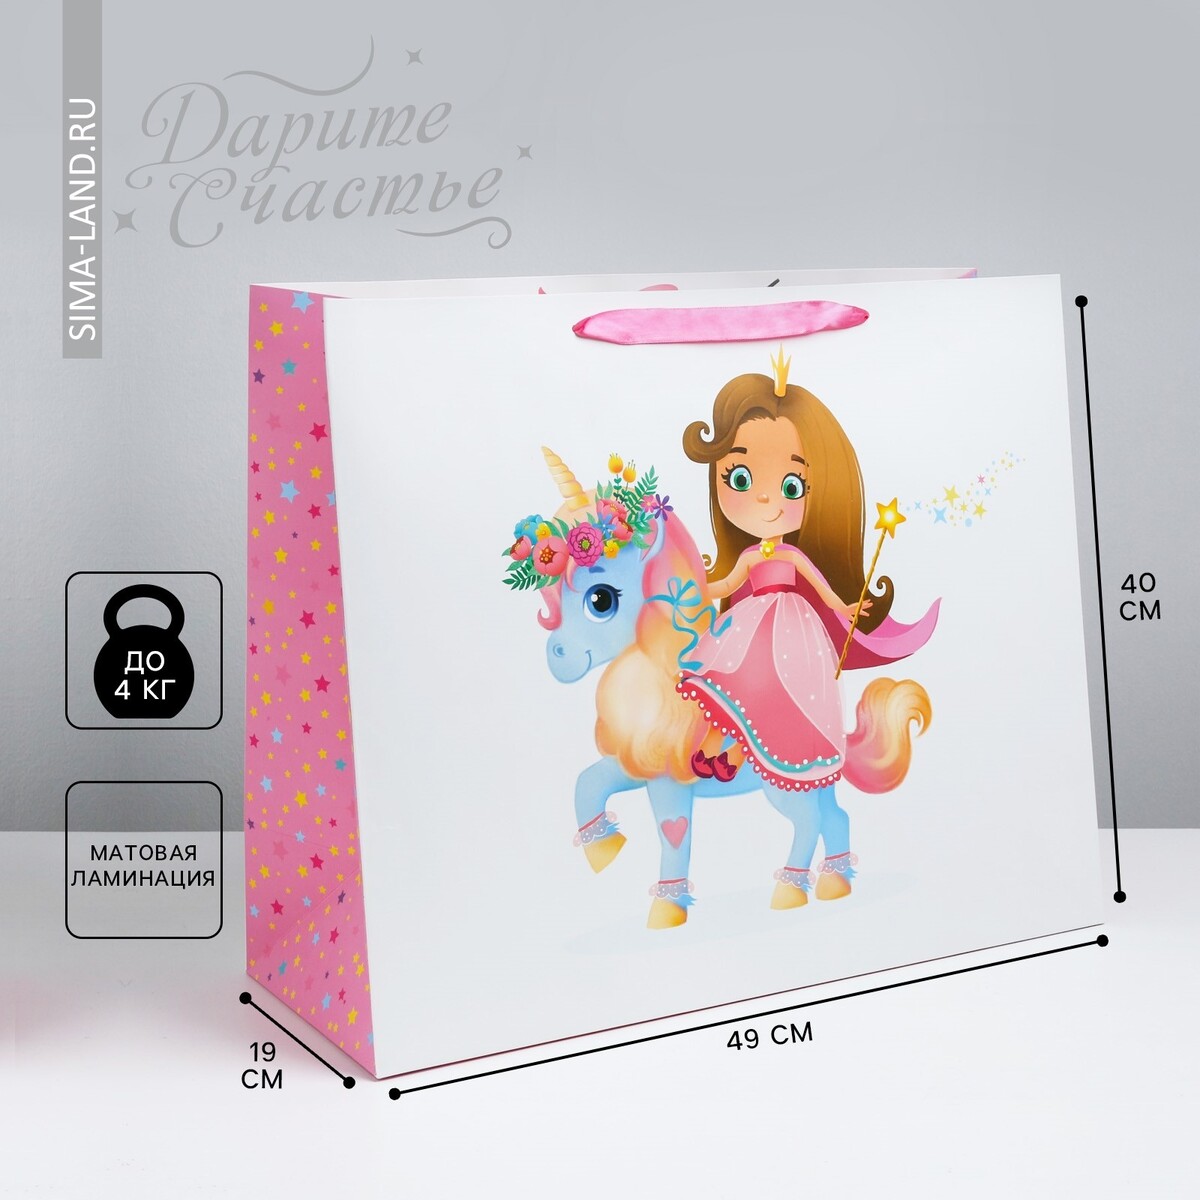 Пакет подарочный ламинированный, упаковка, кондитерская упаковка с окном розовая 21 х 21 х 10 см